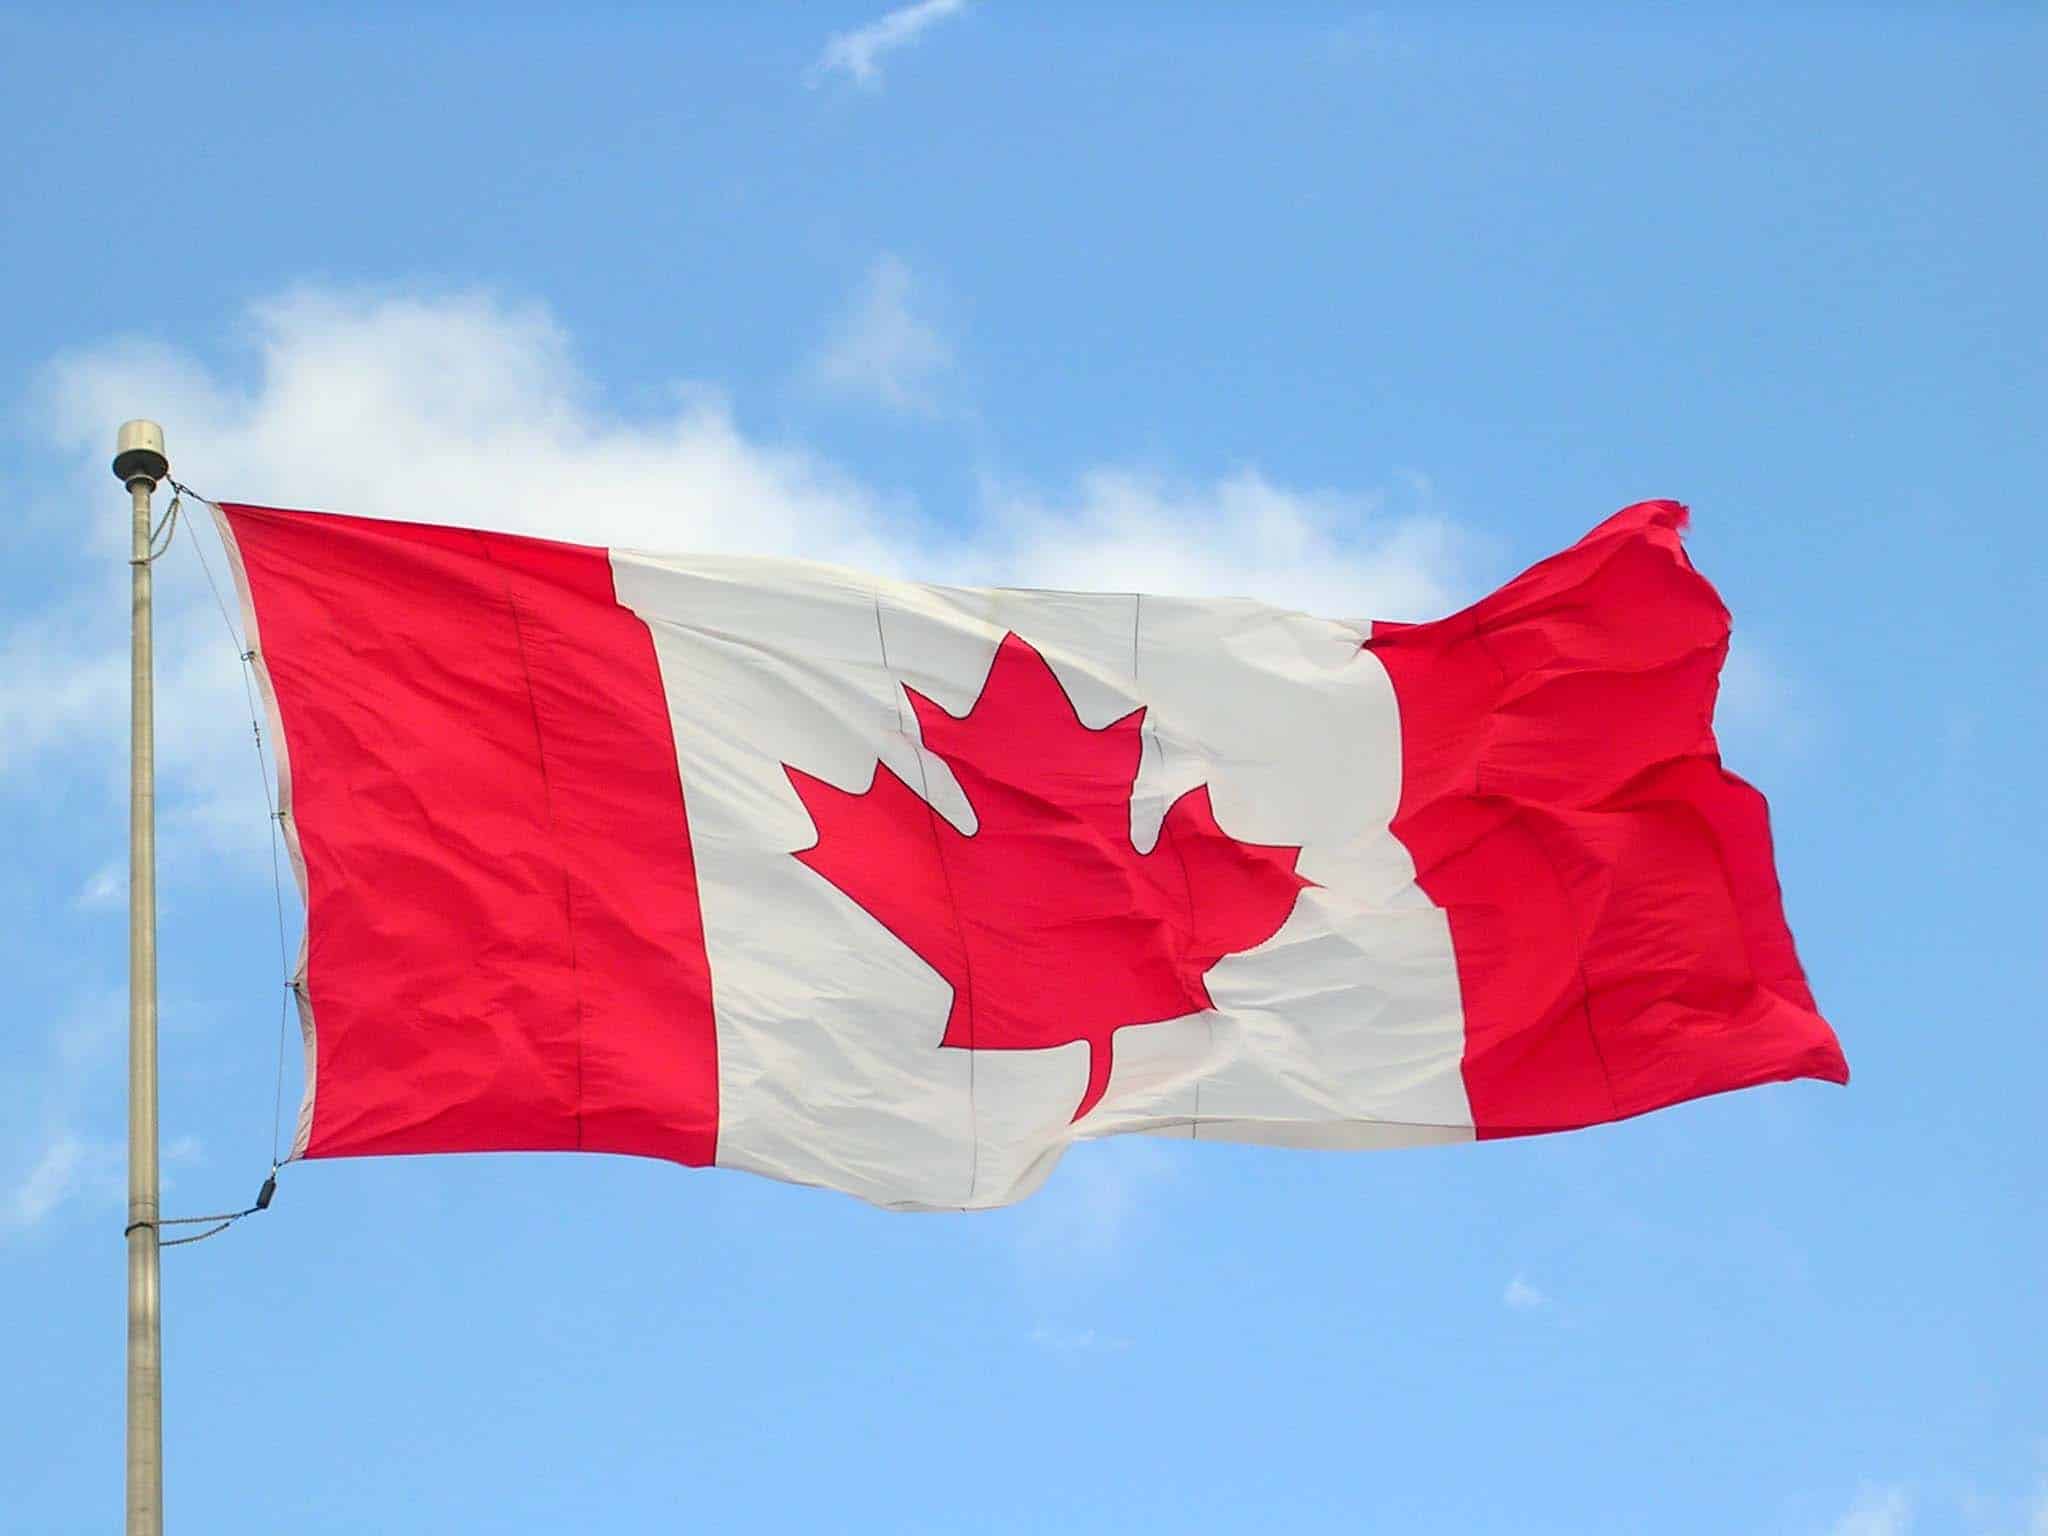 Canadá, el segundo mejor país del mundo según estudio